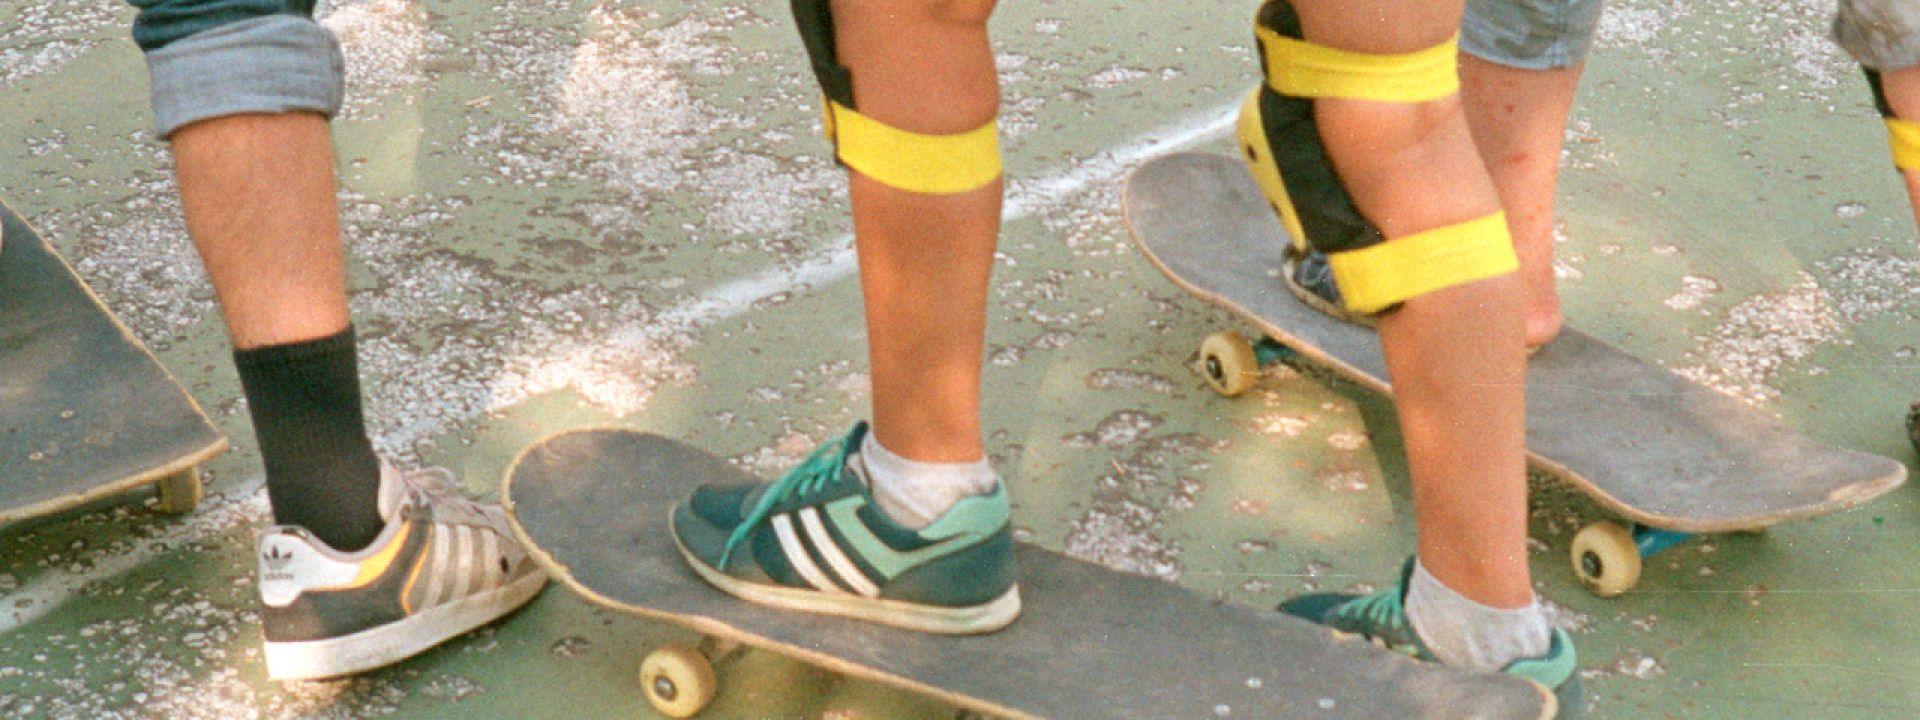 Skateboarding kids